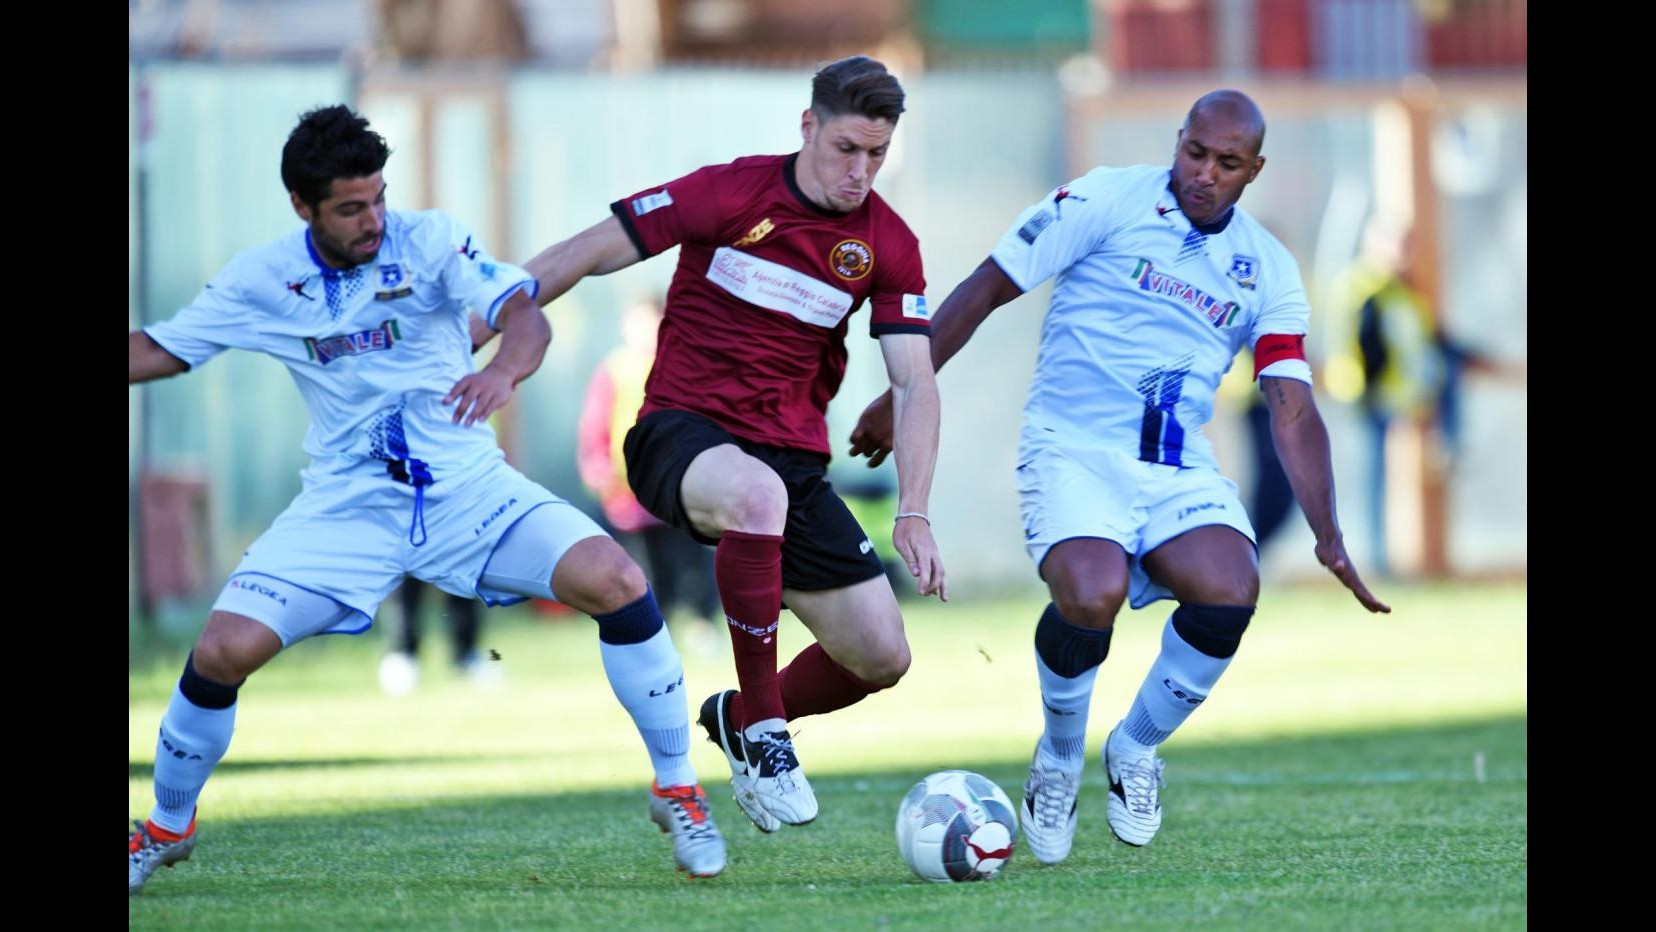 FOTO Lega Pro, gol e capovolgimenti in Reggina-Paganese 4-3